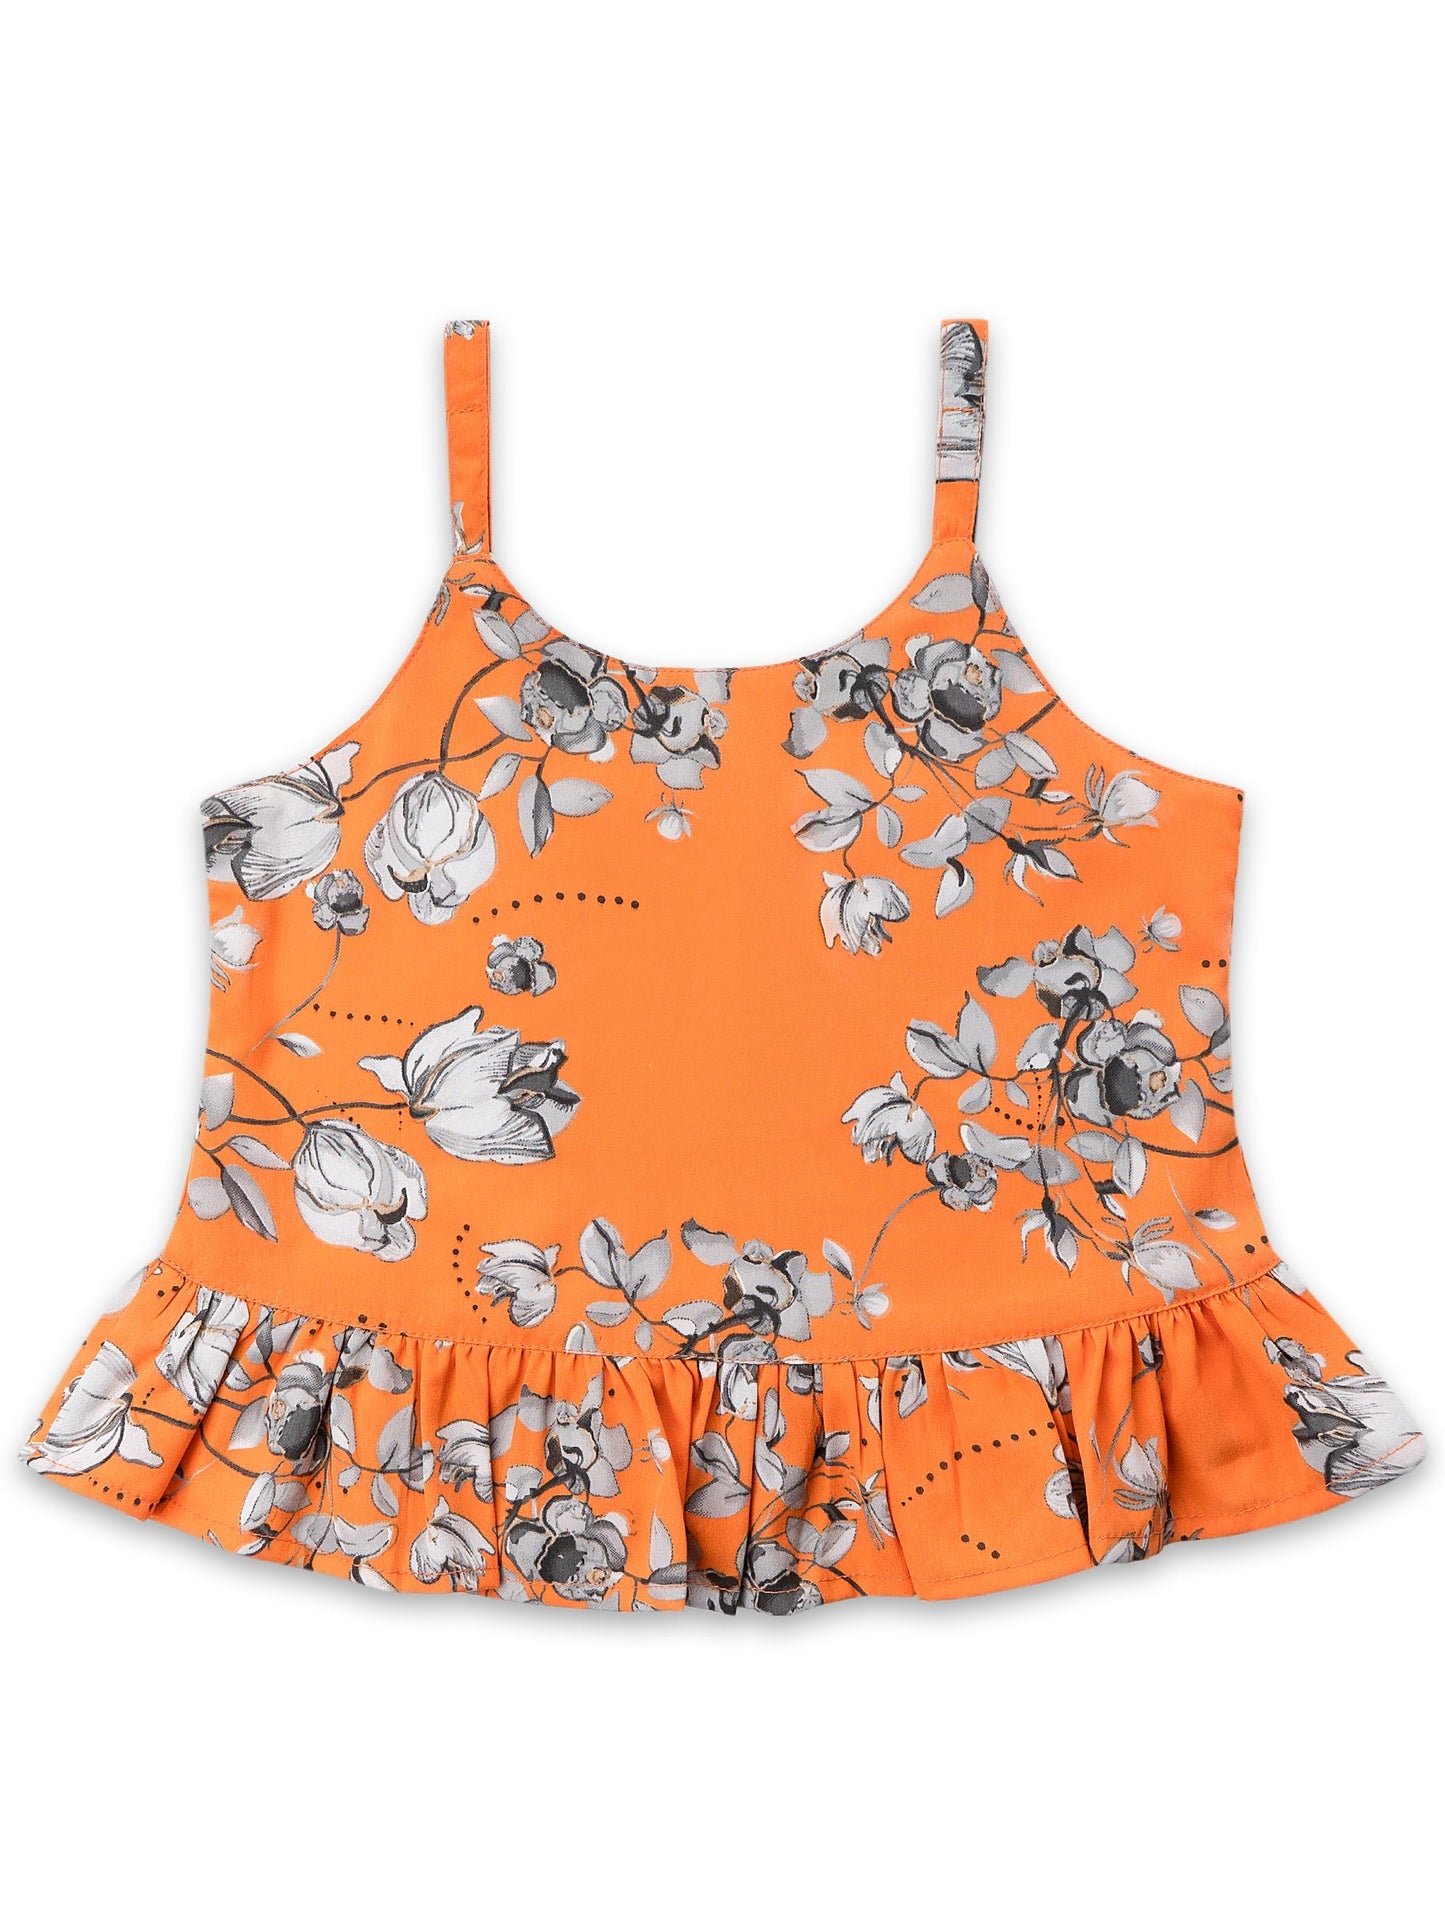 Girls Orange Floral Top and Short Set